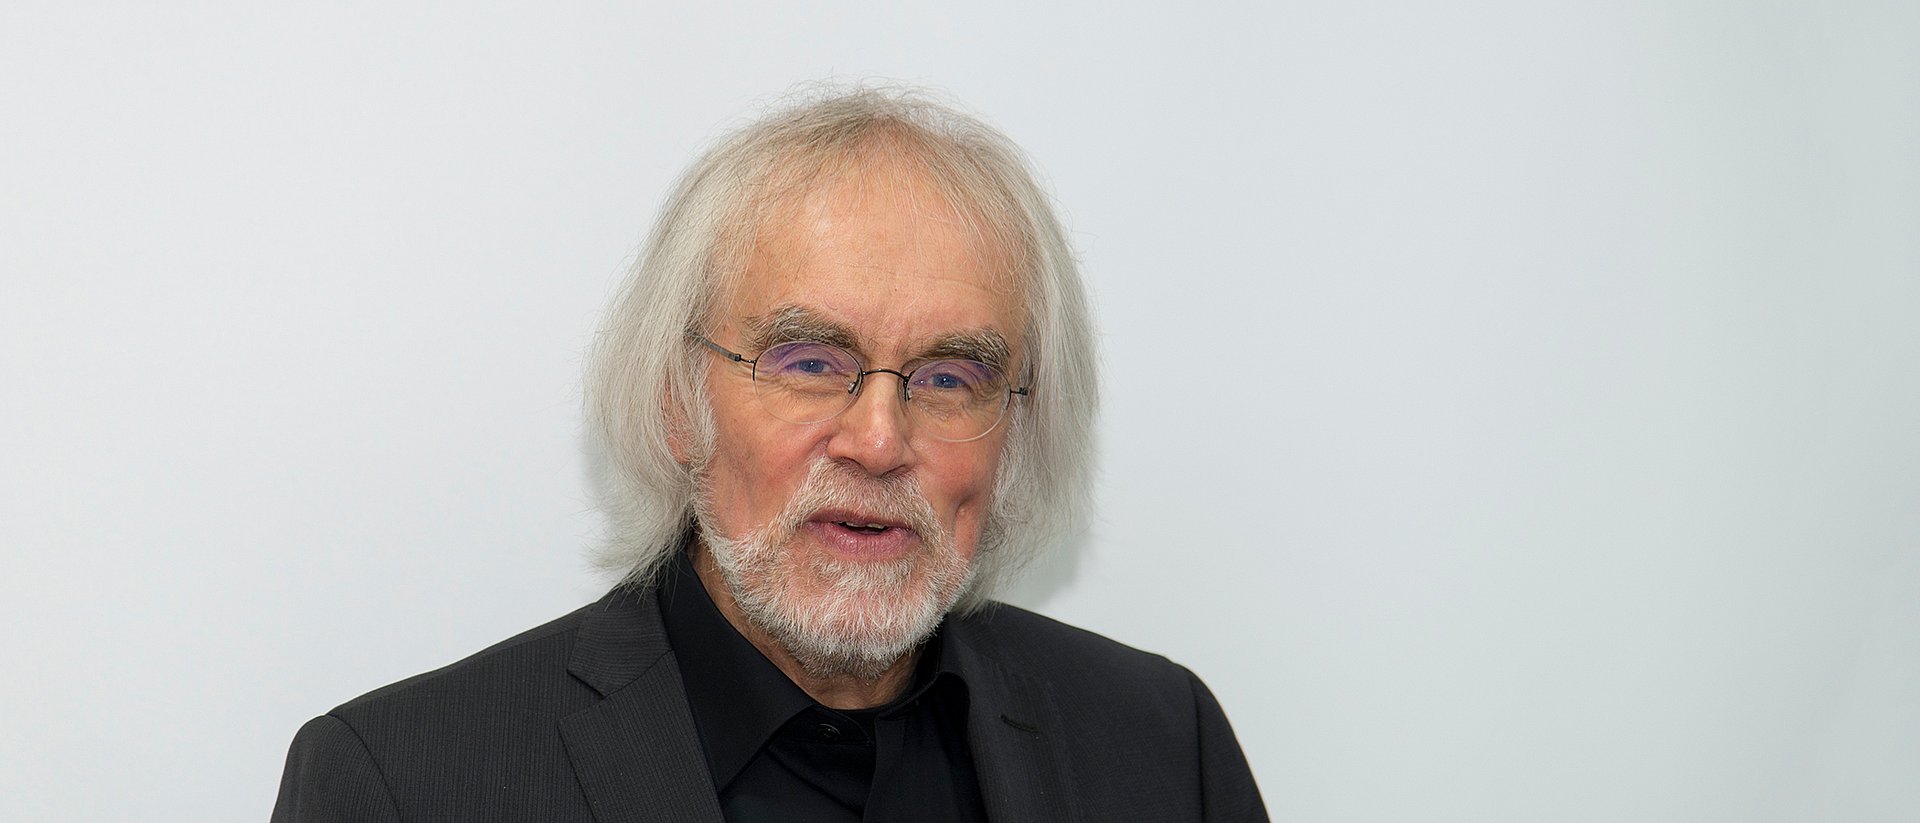 Prof. Dr. Andrzej J. Buras, theoretischer Physiker und Emeritus of Excellence der Technischen Universität München (TUM).